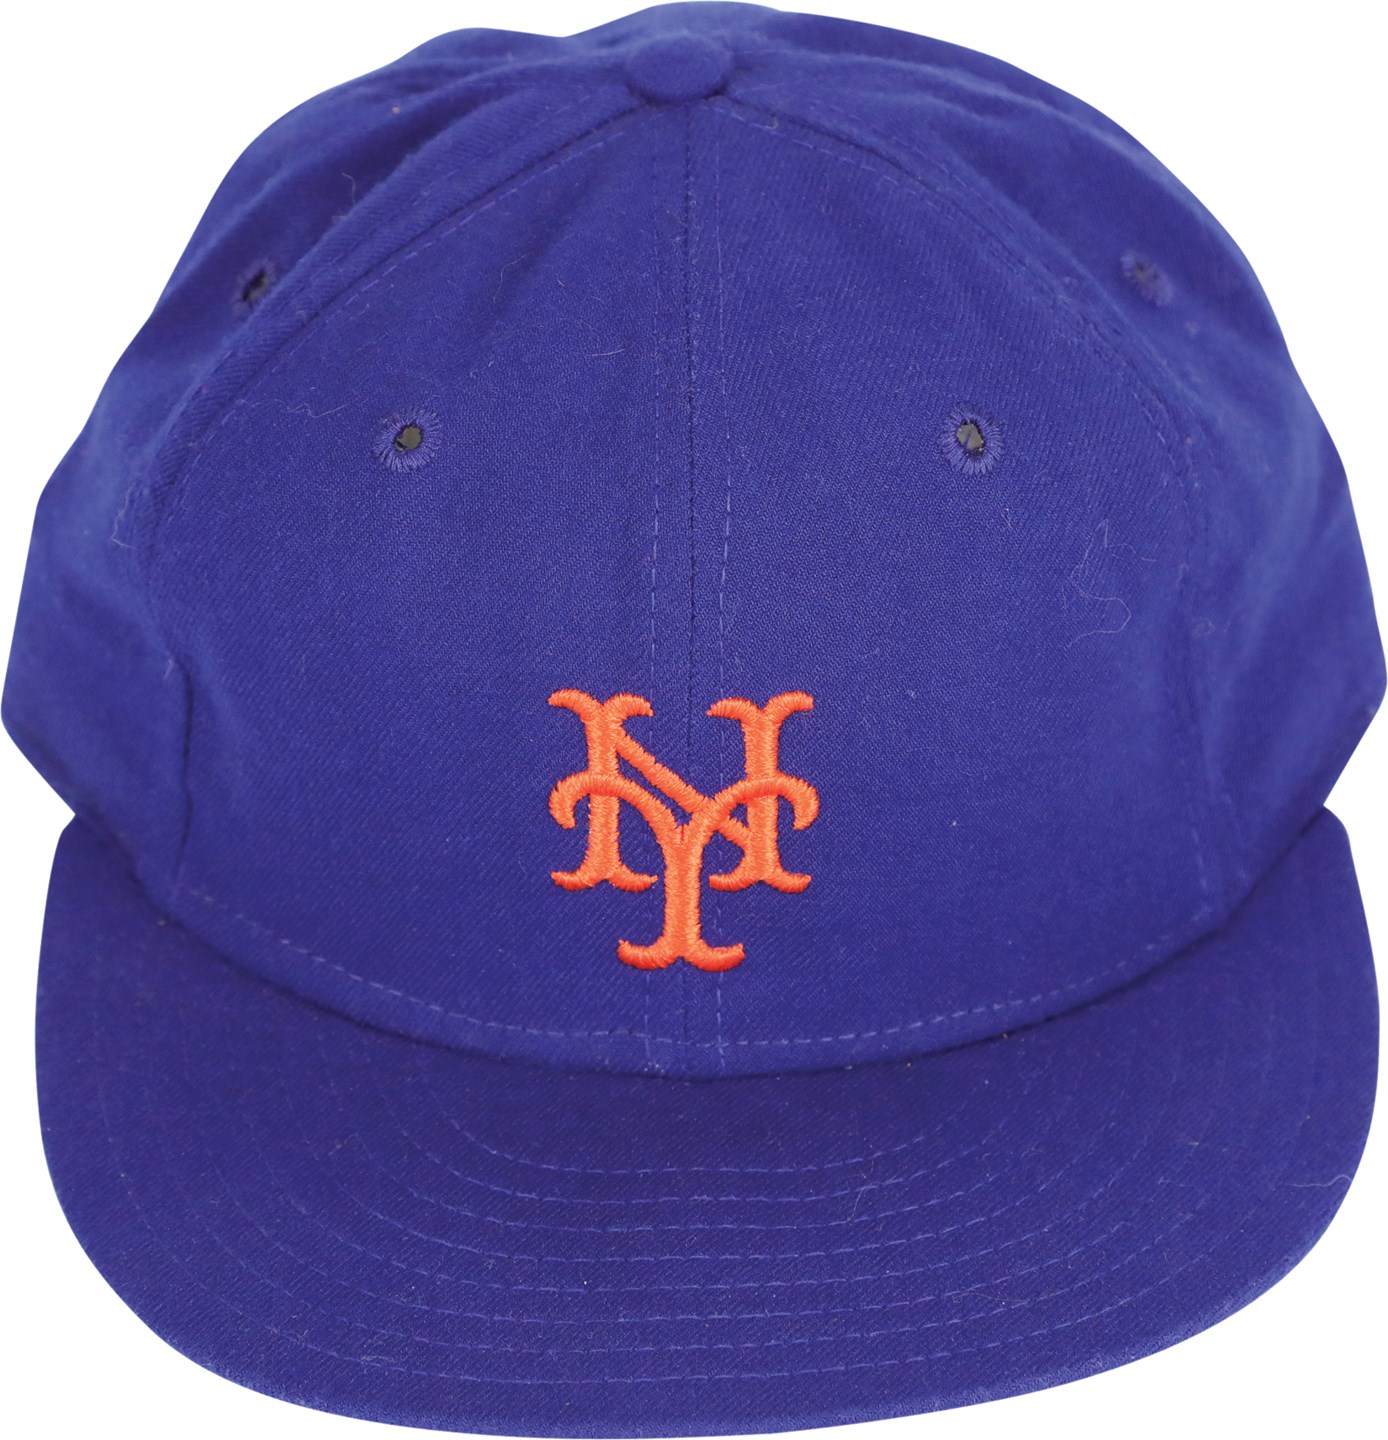 - 1983 Tom Seaver Final Season Game Used New York Mets Hat